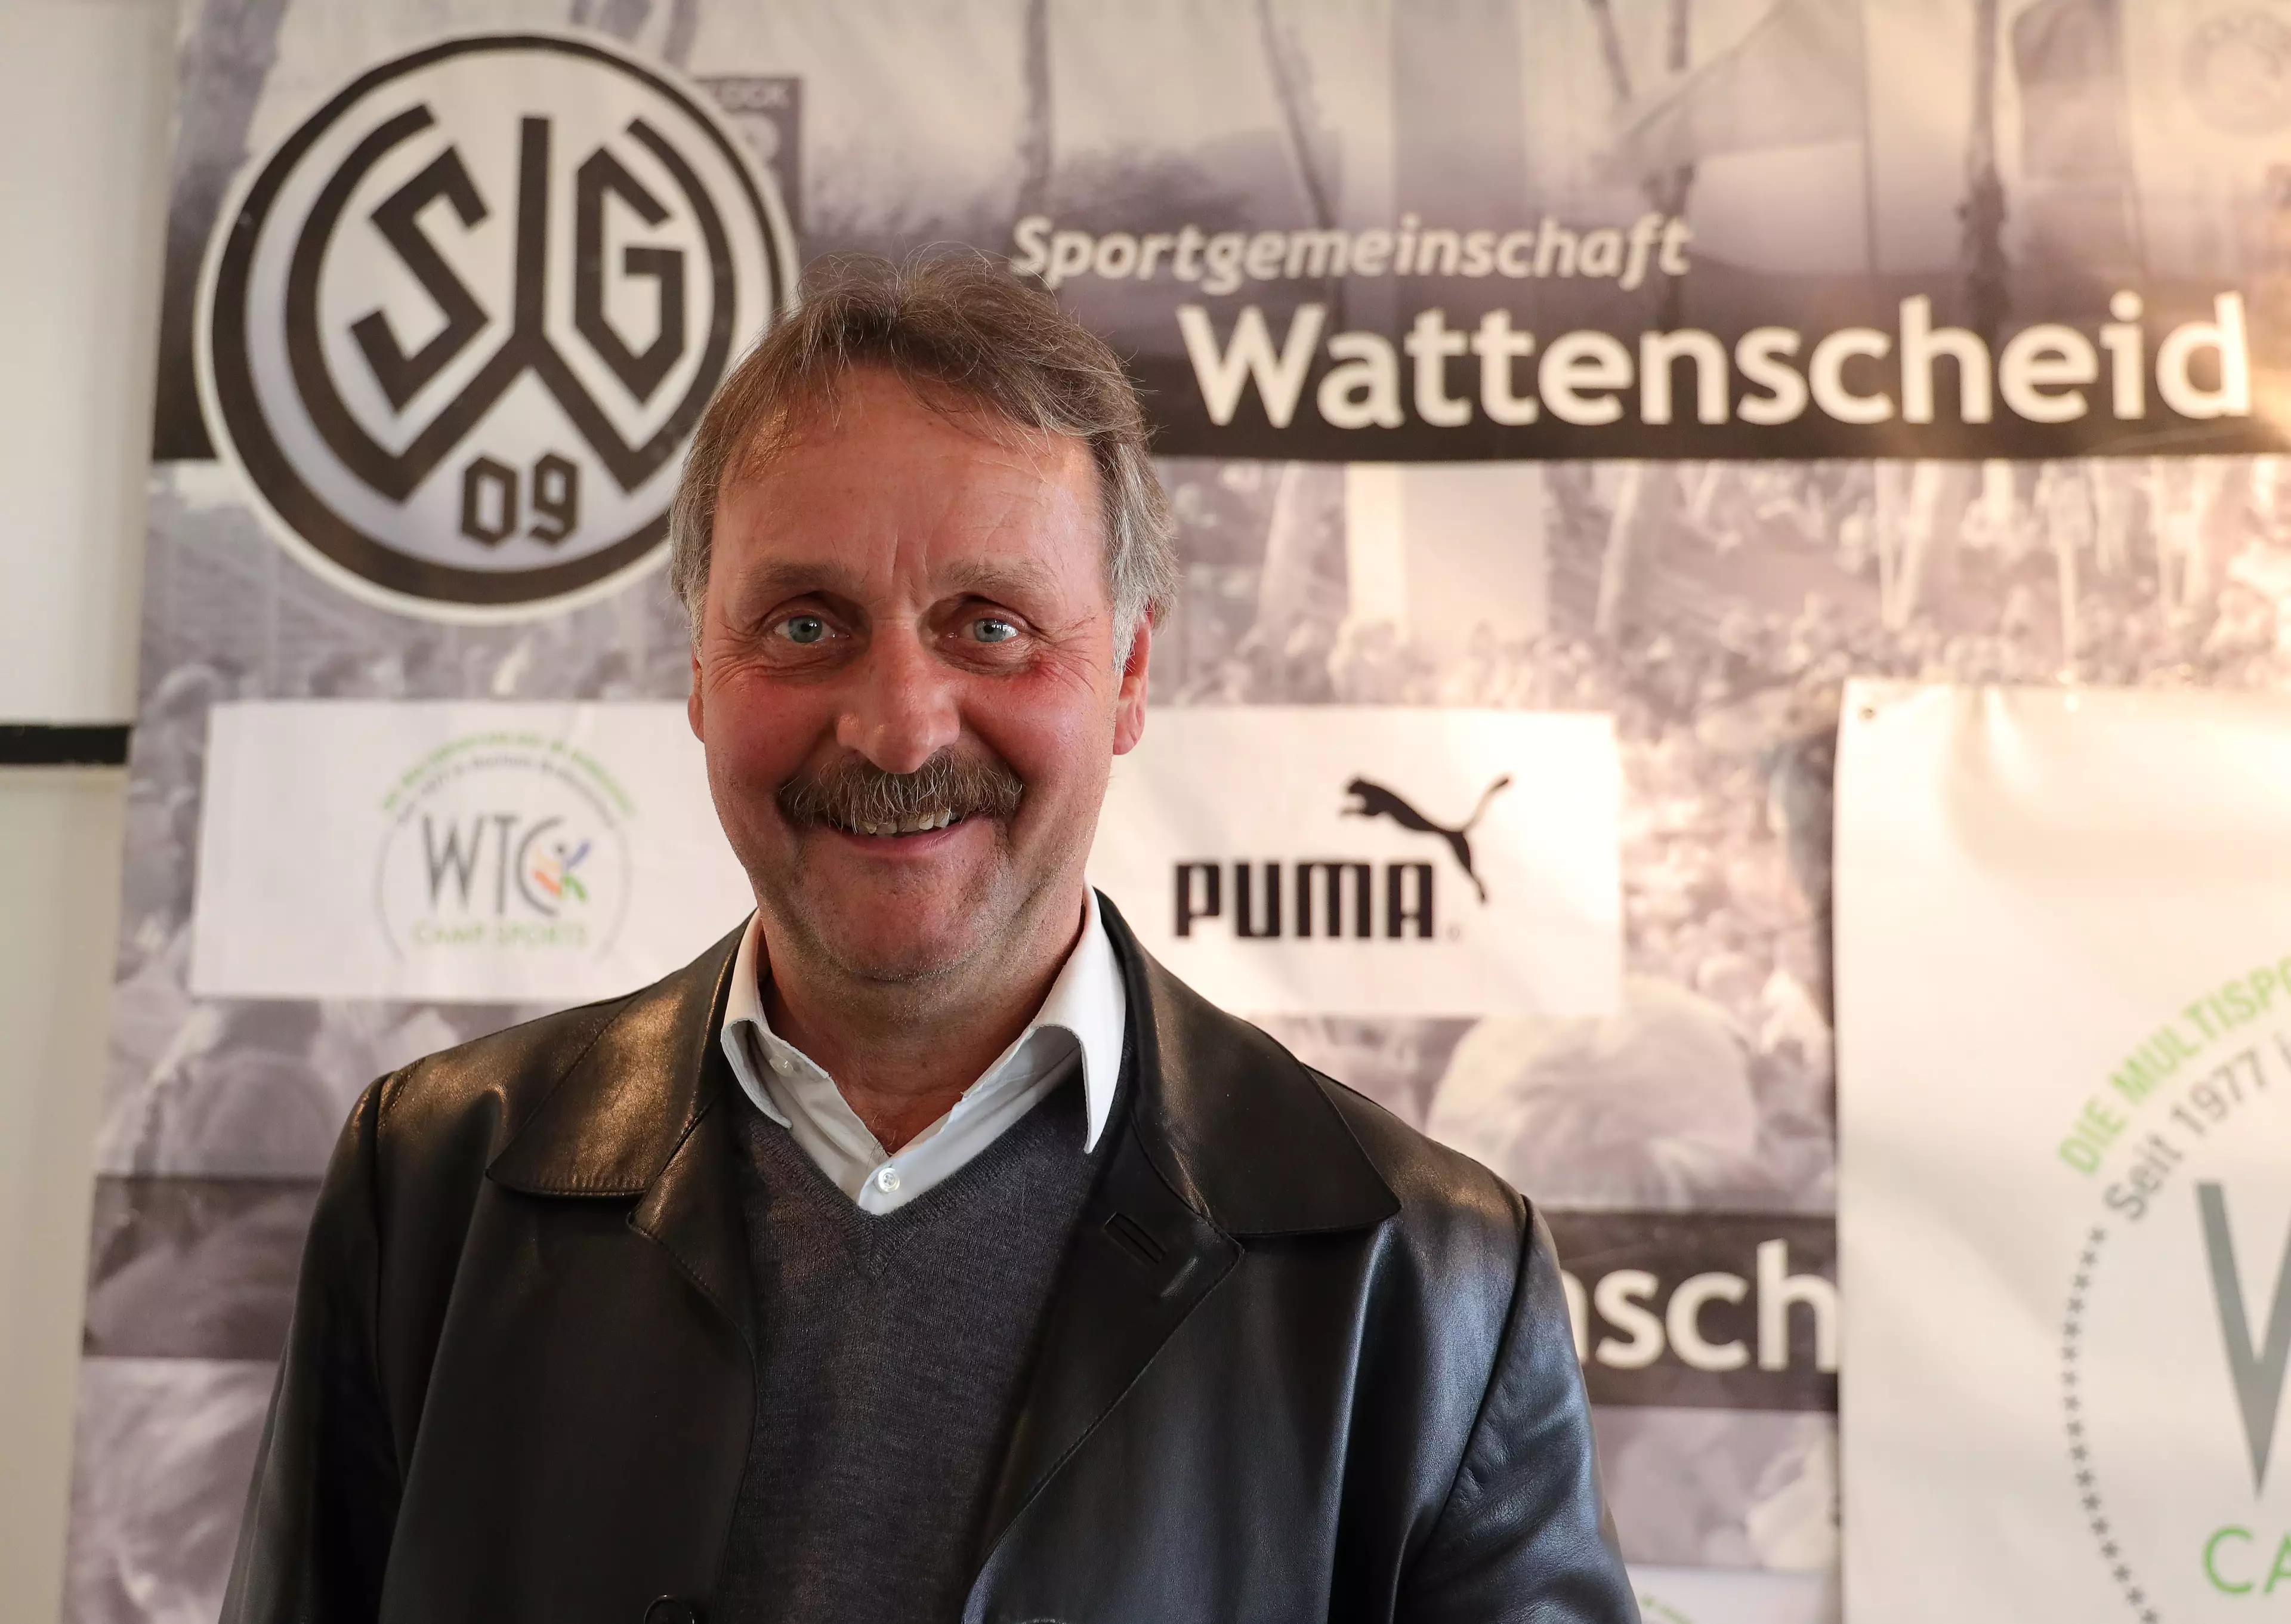 Peter Neururer at his SG Wattenscheid 09 unveiling (Image